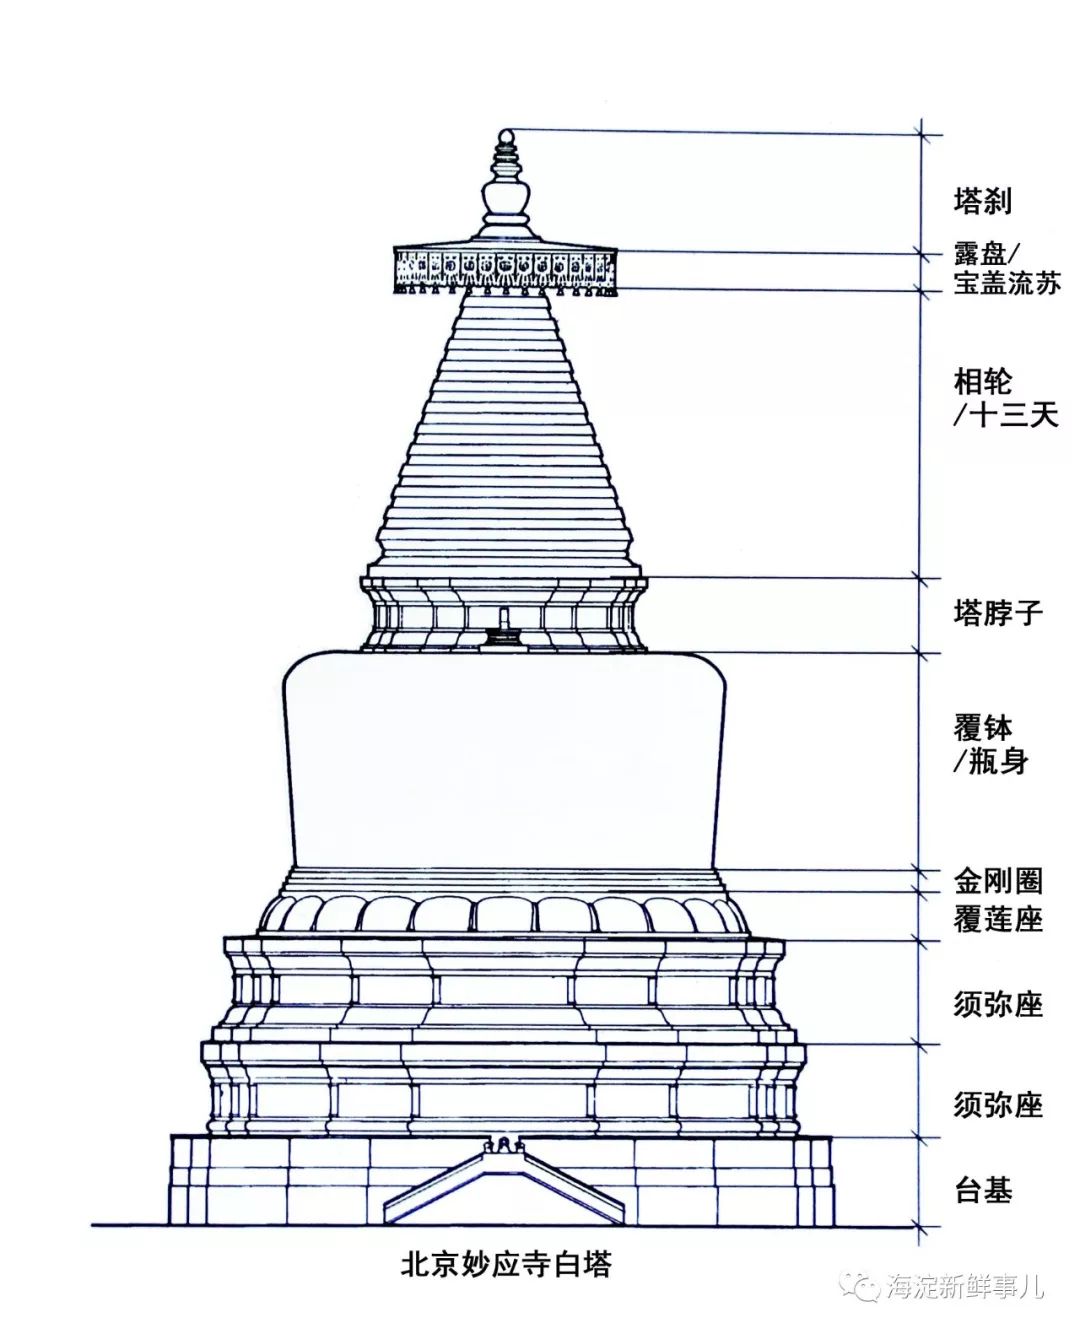 北京现存的妙应寺白塔就是典型的喇嘛塔.